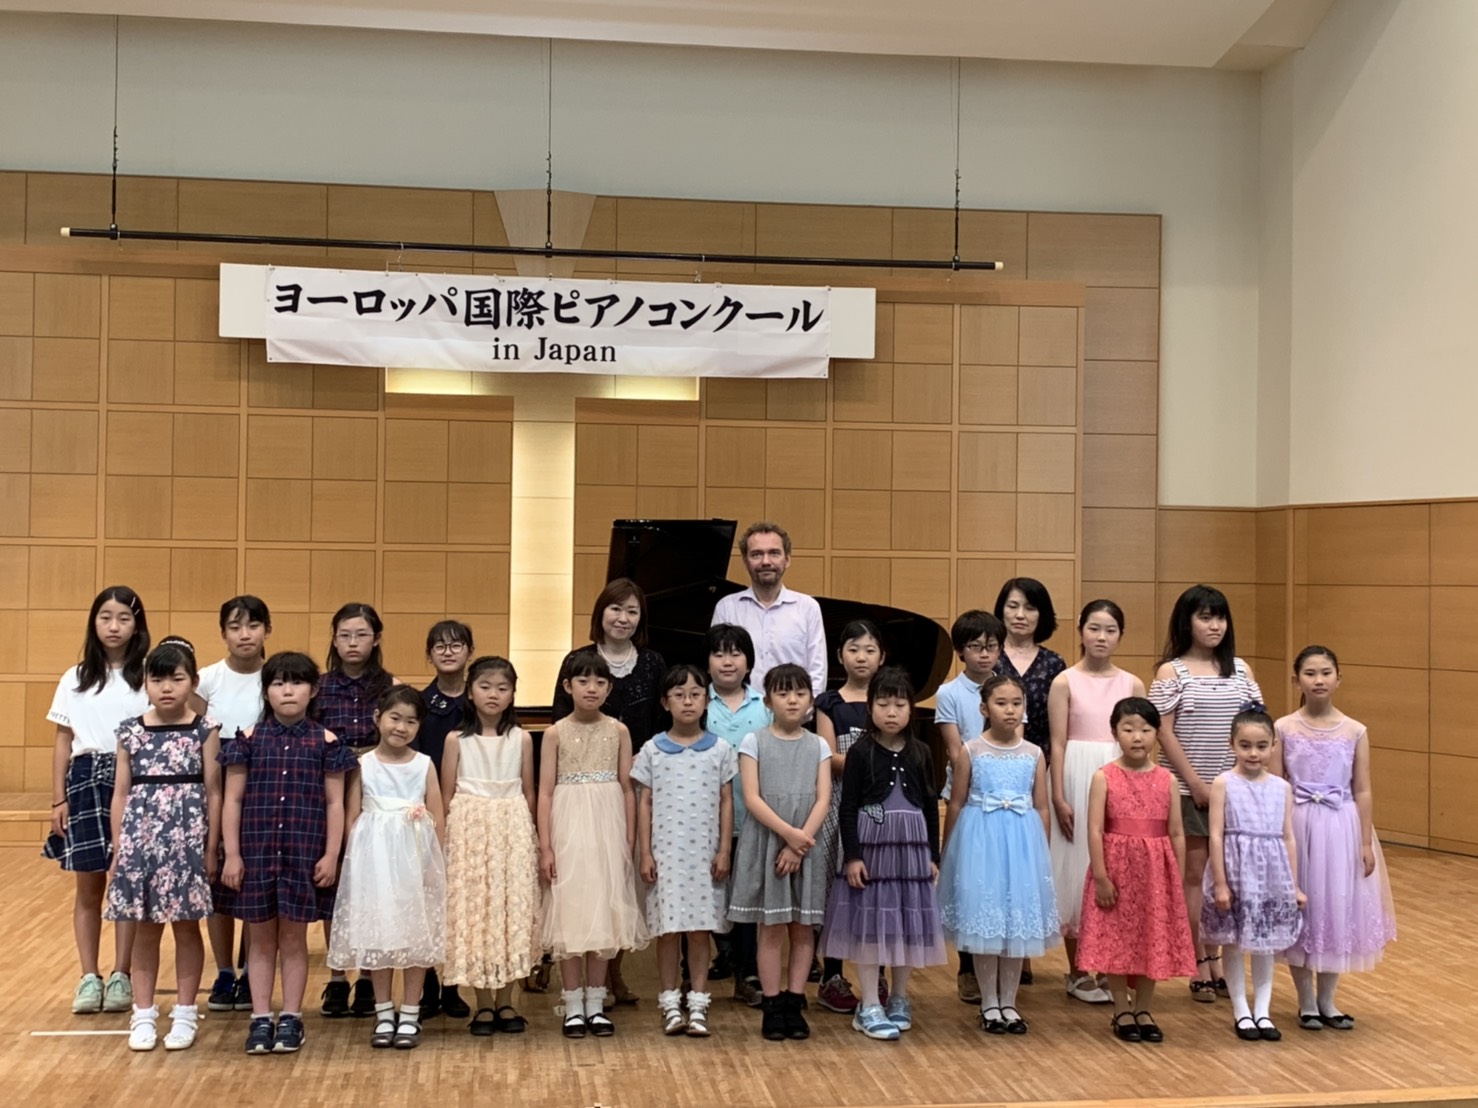 第10回ヨーロッパ国際ピアノコンクールin japan 仙台地区予選